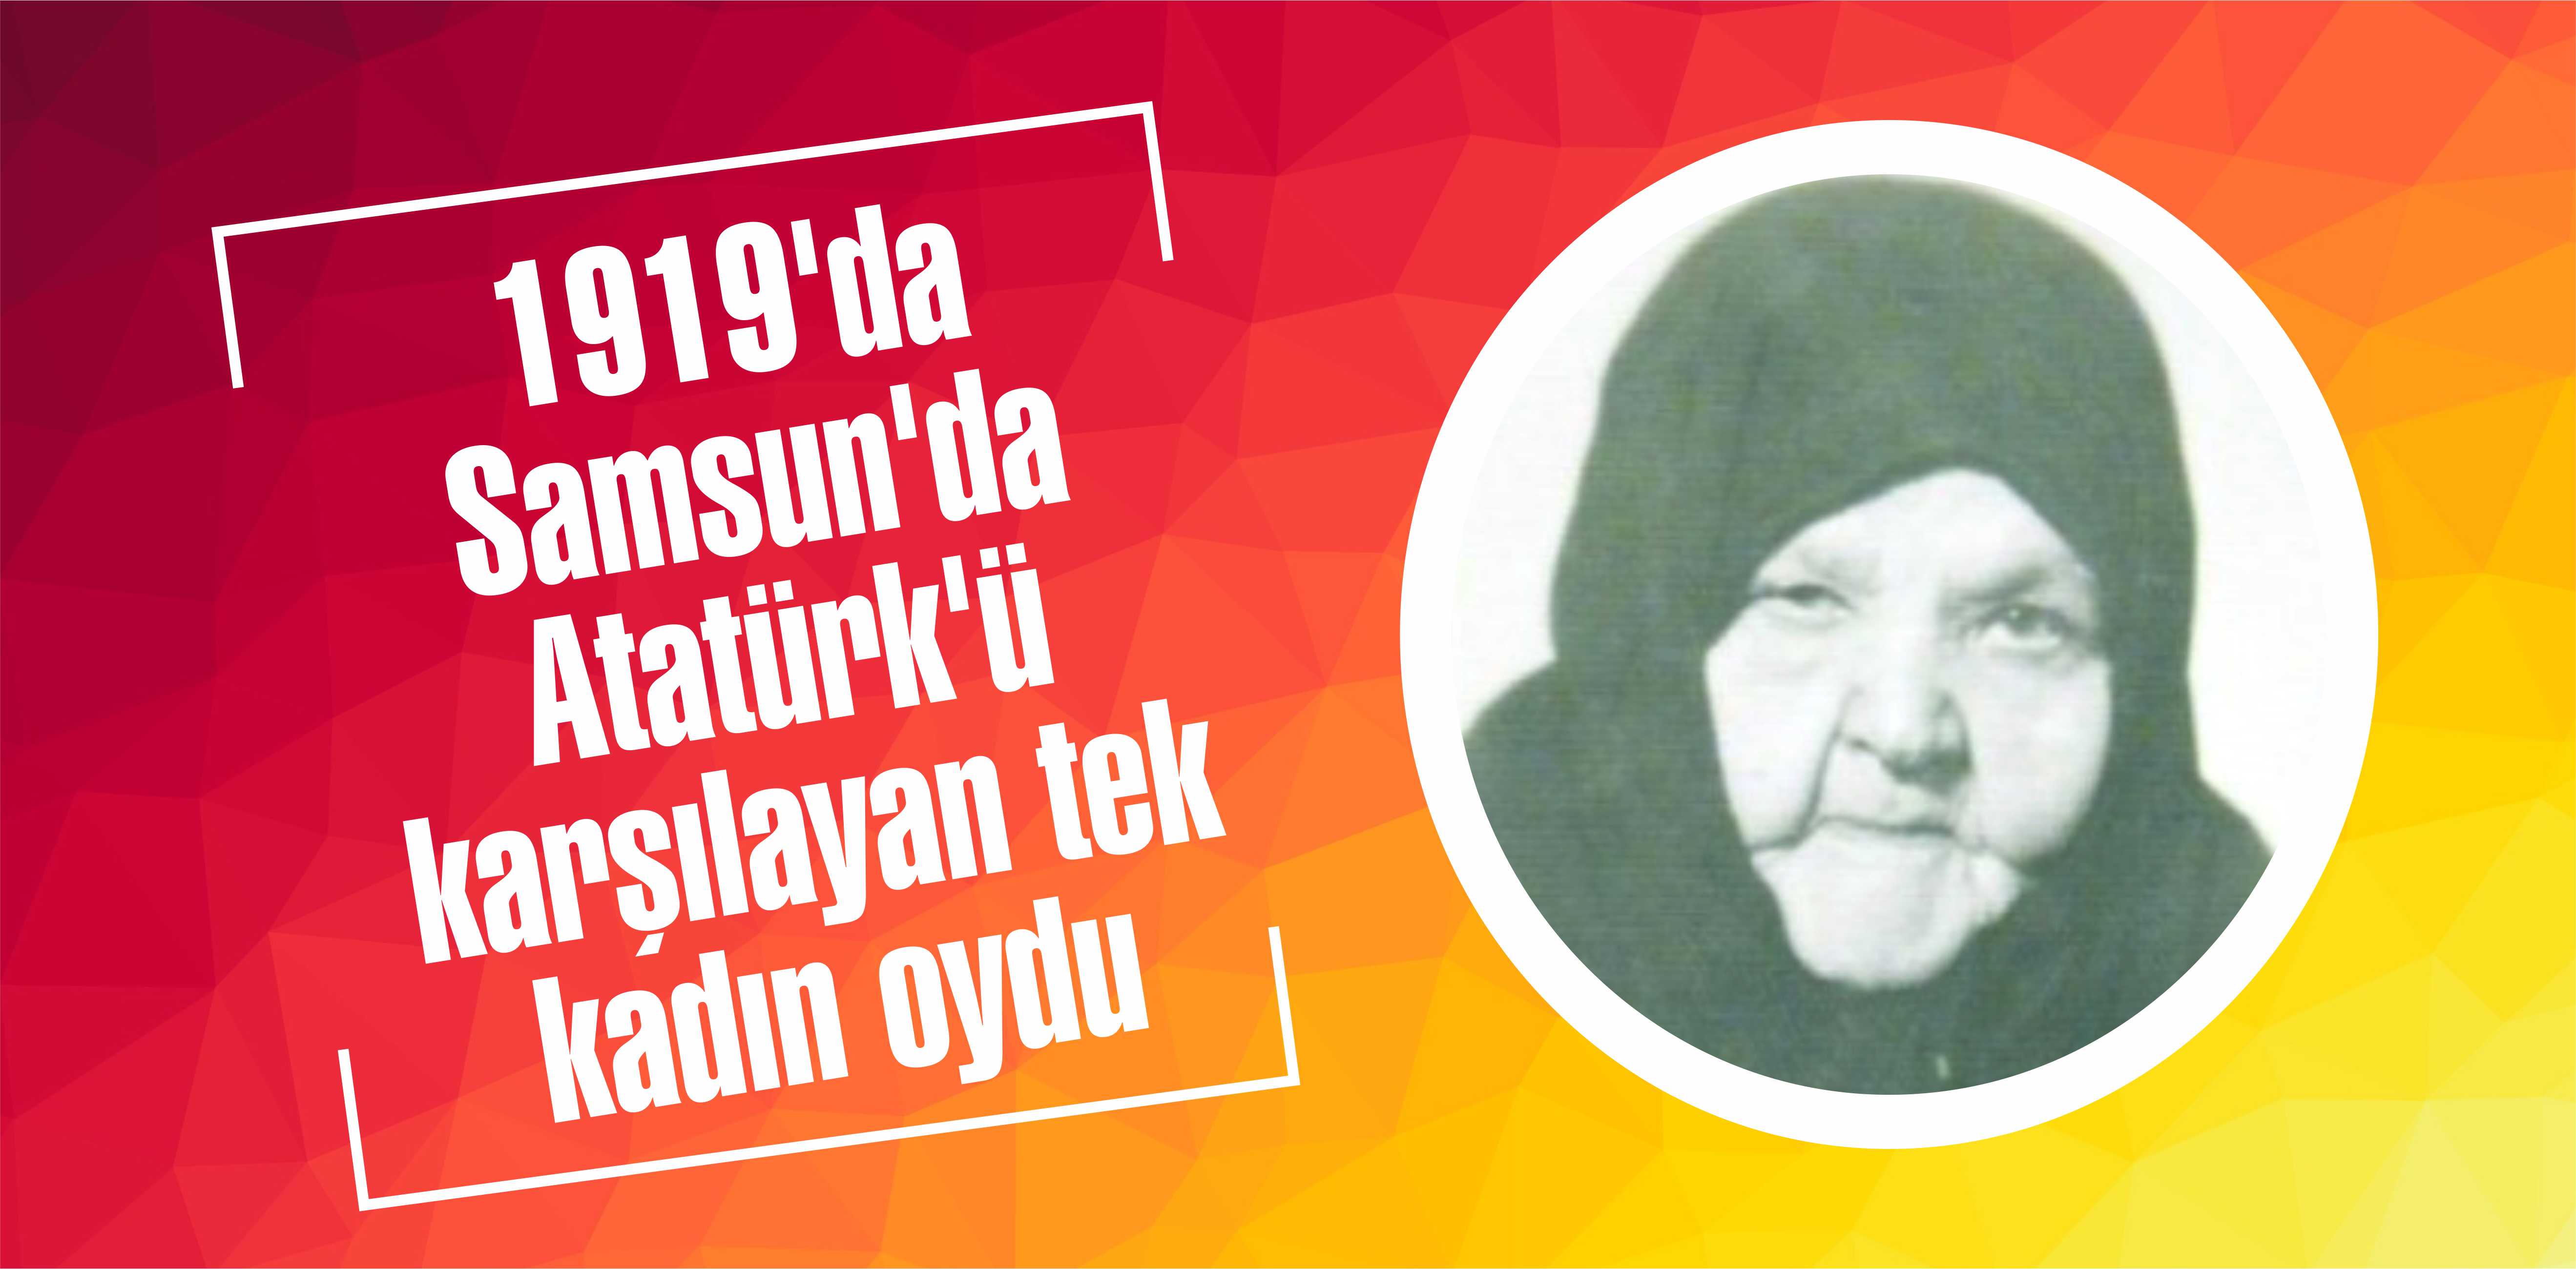 1919’da Samsun’da Atatürk’ü karşılayan tek kadın oydu